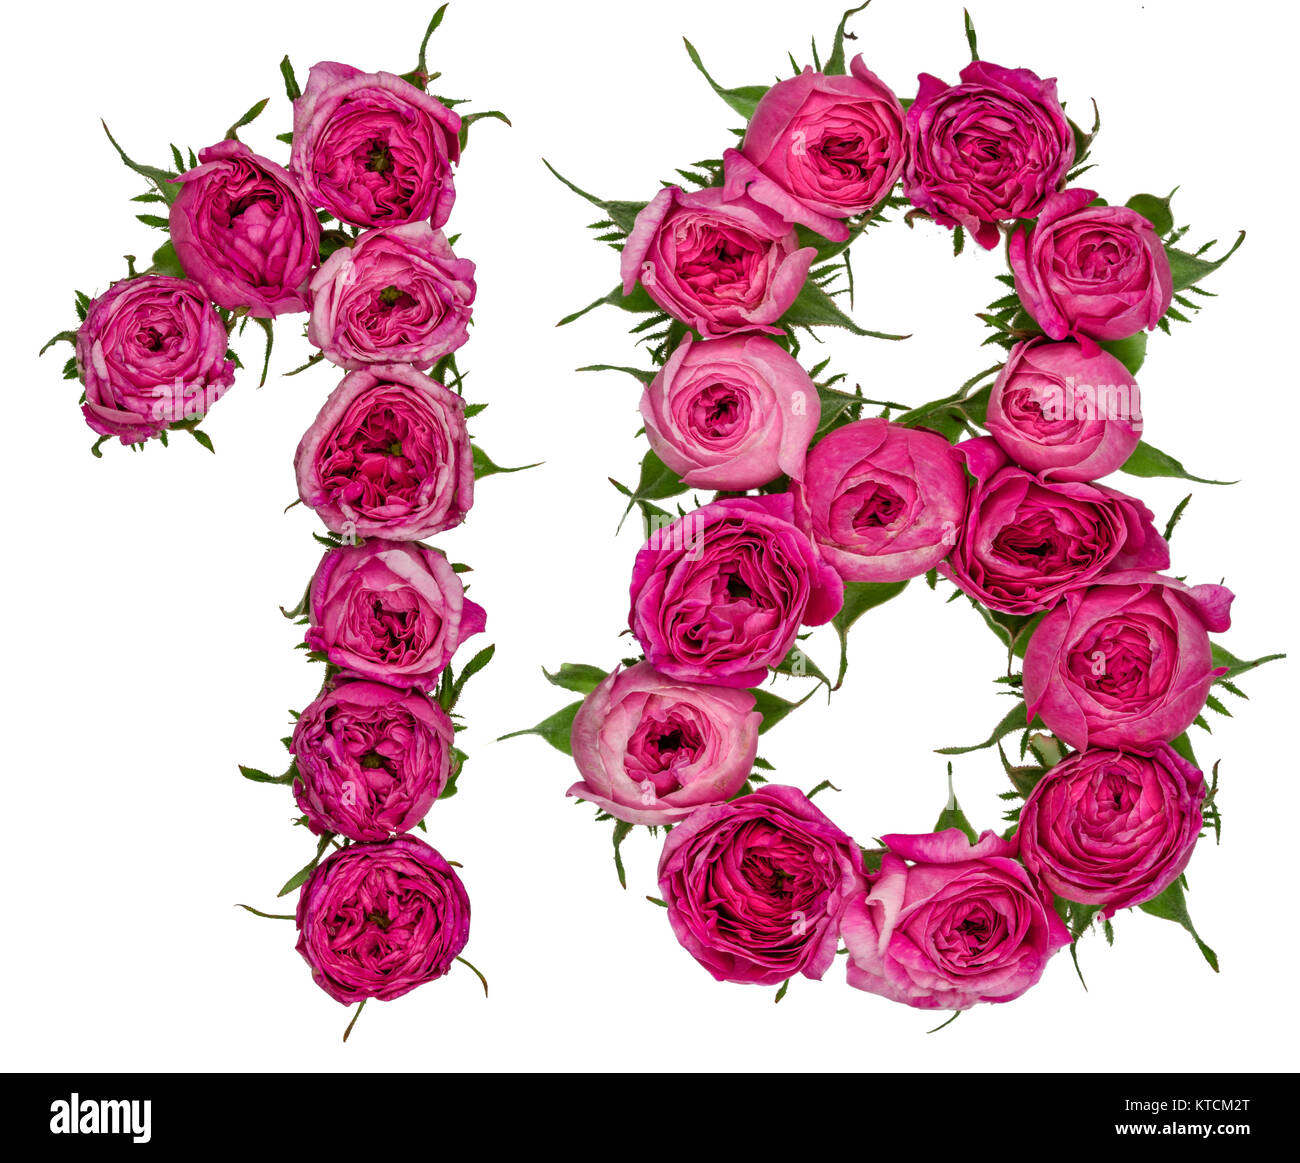 Numero arabo 18, diciotto, dal rosso dei fiori di rosa, isolato su sfondo  bianco Foto stock - Alamy